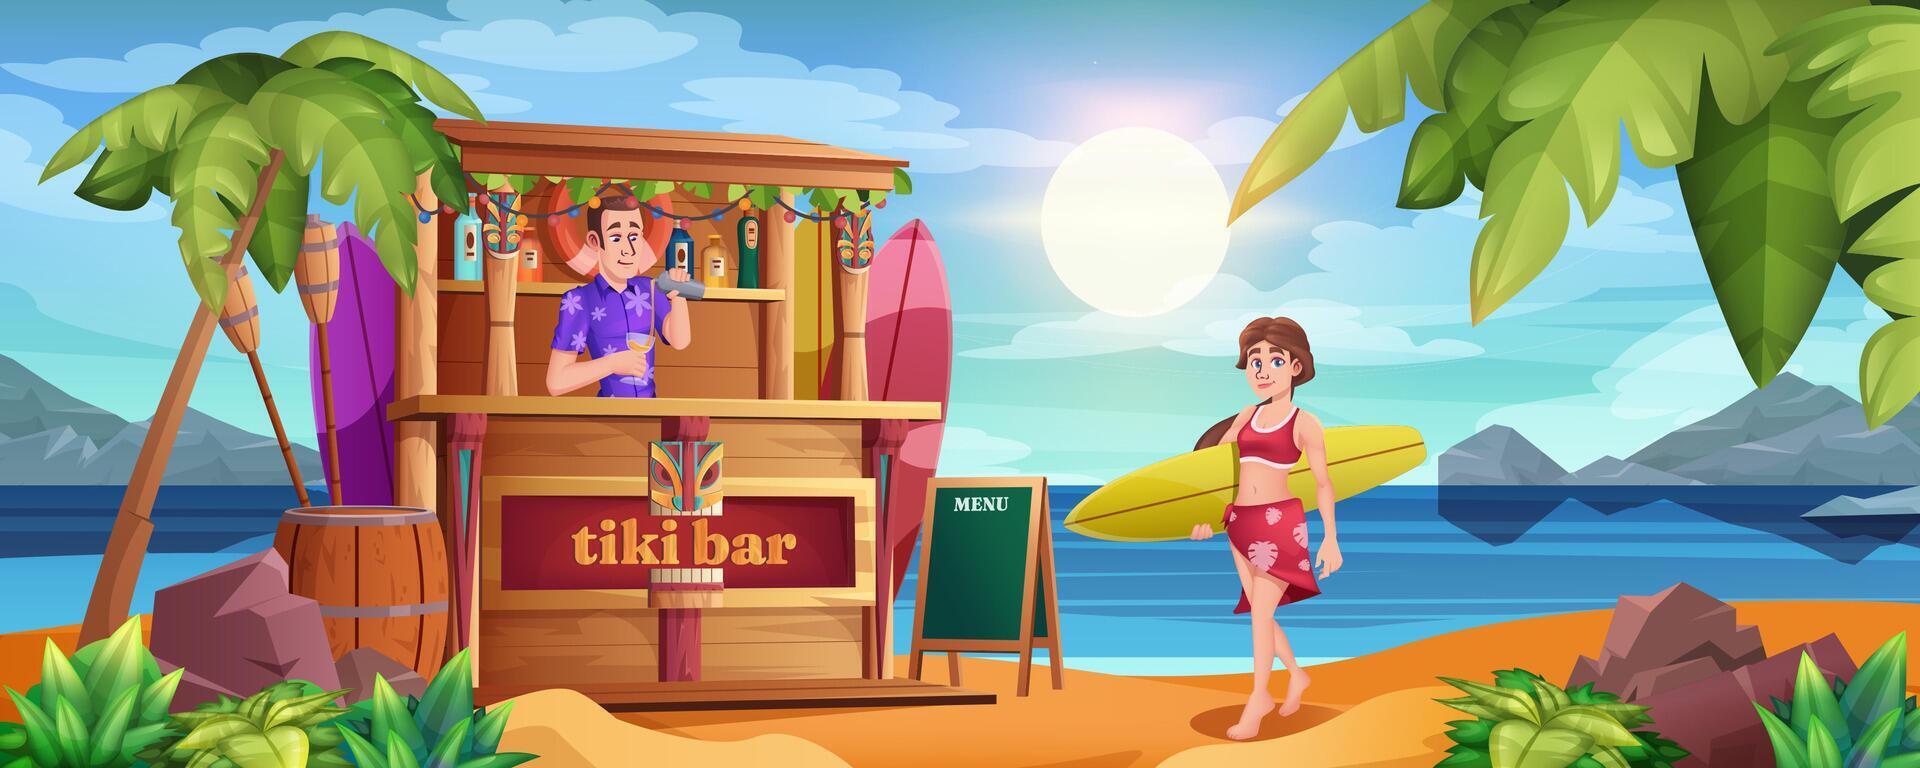 tekenfilm zomer strand met tiki bar en barman. glimlachen meisje in zomer jurk met surfboard Bij oceaan zanderig kustlijn met palm bomen. barman met cocktails en houten hut Aan zee. vector